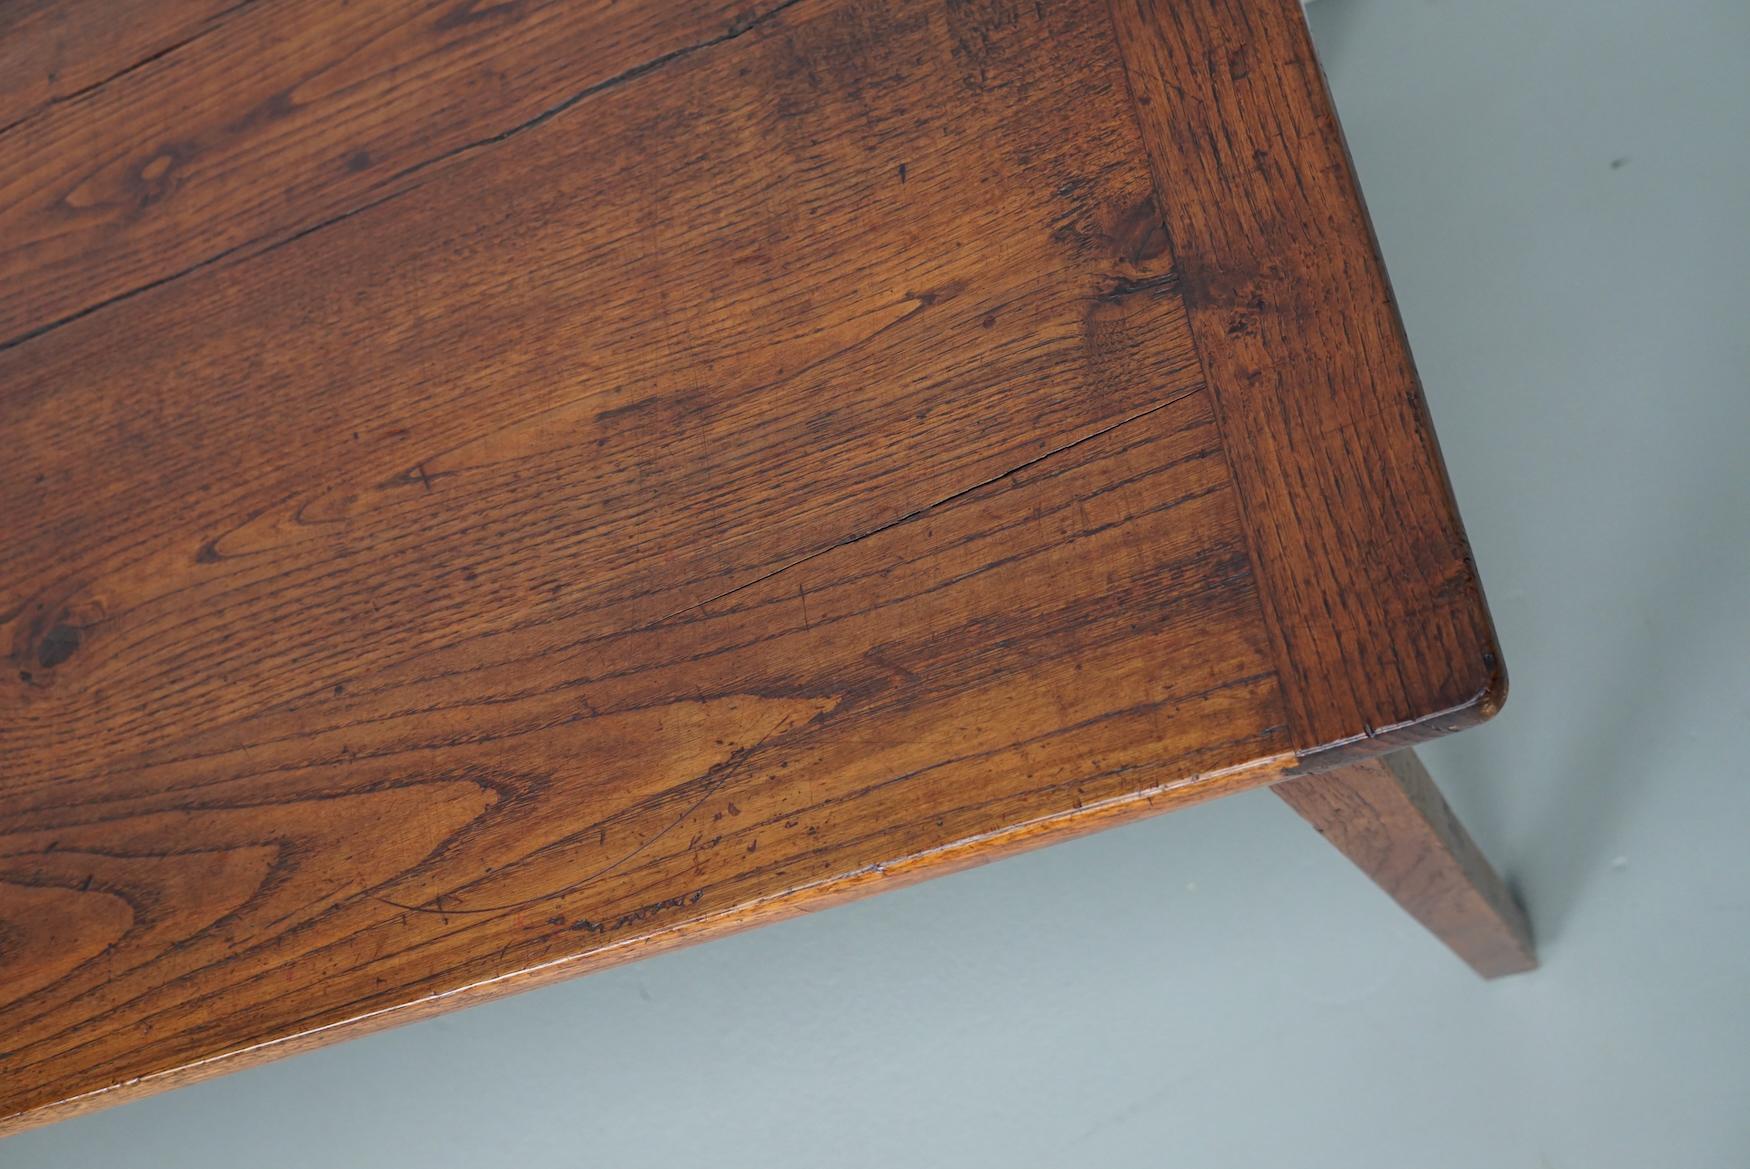 Cette élégante table a été fabriquée en France au début du 20e siècle. La table a été fabriquée en chêne massif avec de magnifiques veinures. La couleur est très chaude et la table présente des marques d'utilisation, des réparations anciennes et une